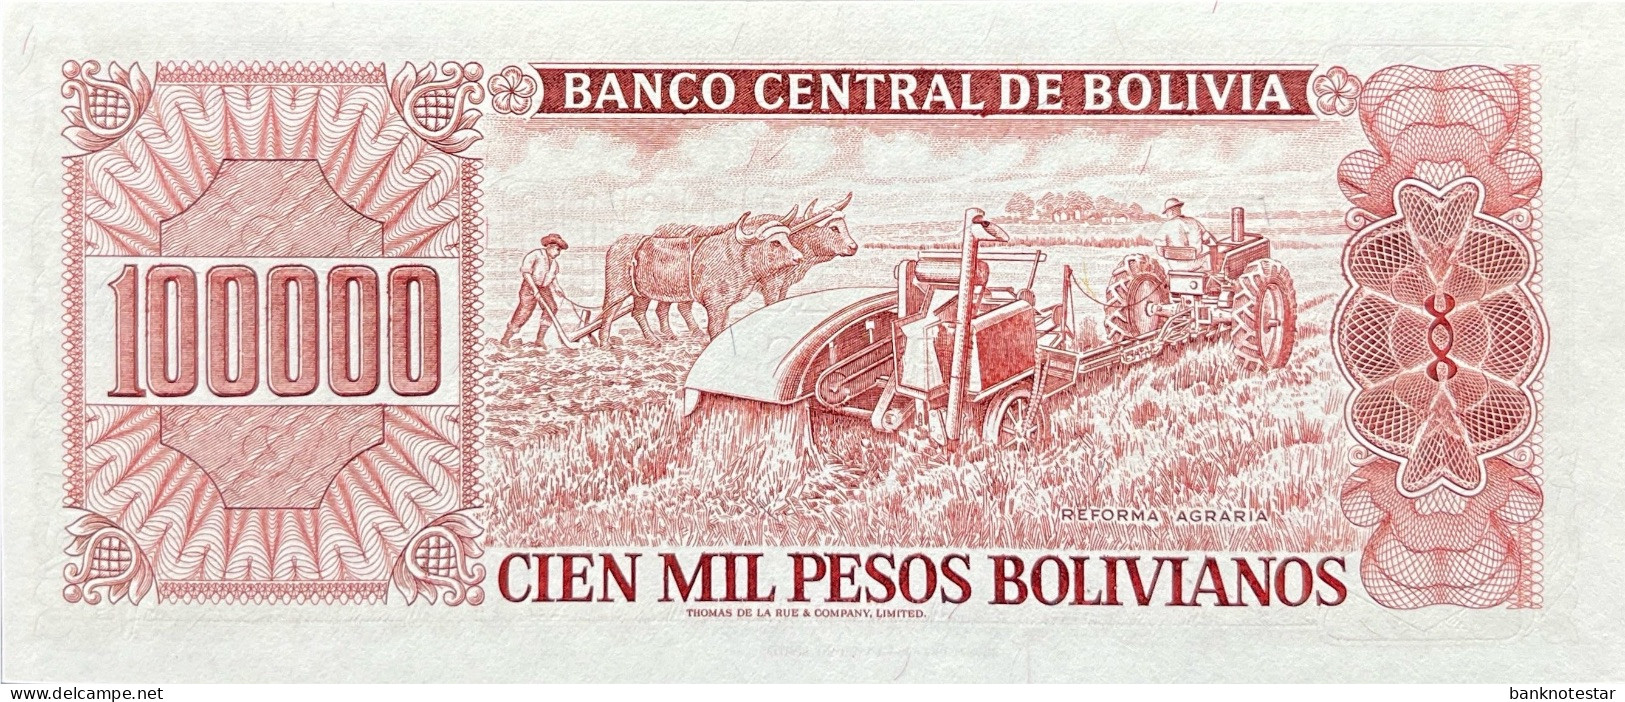 Bolivia 100.000 Pesos Bolivianos, P-171 (5.6.1984) - UNC - Bolivia